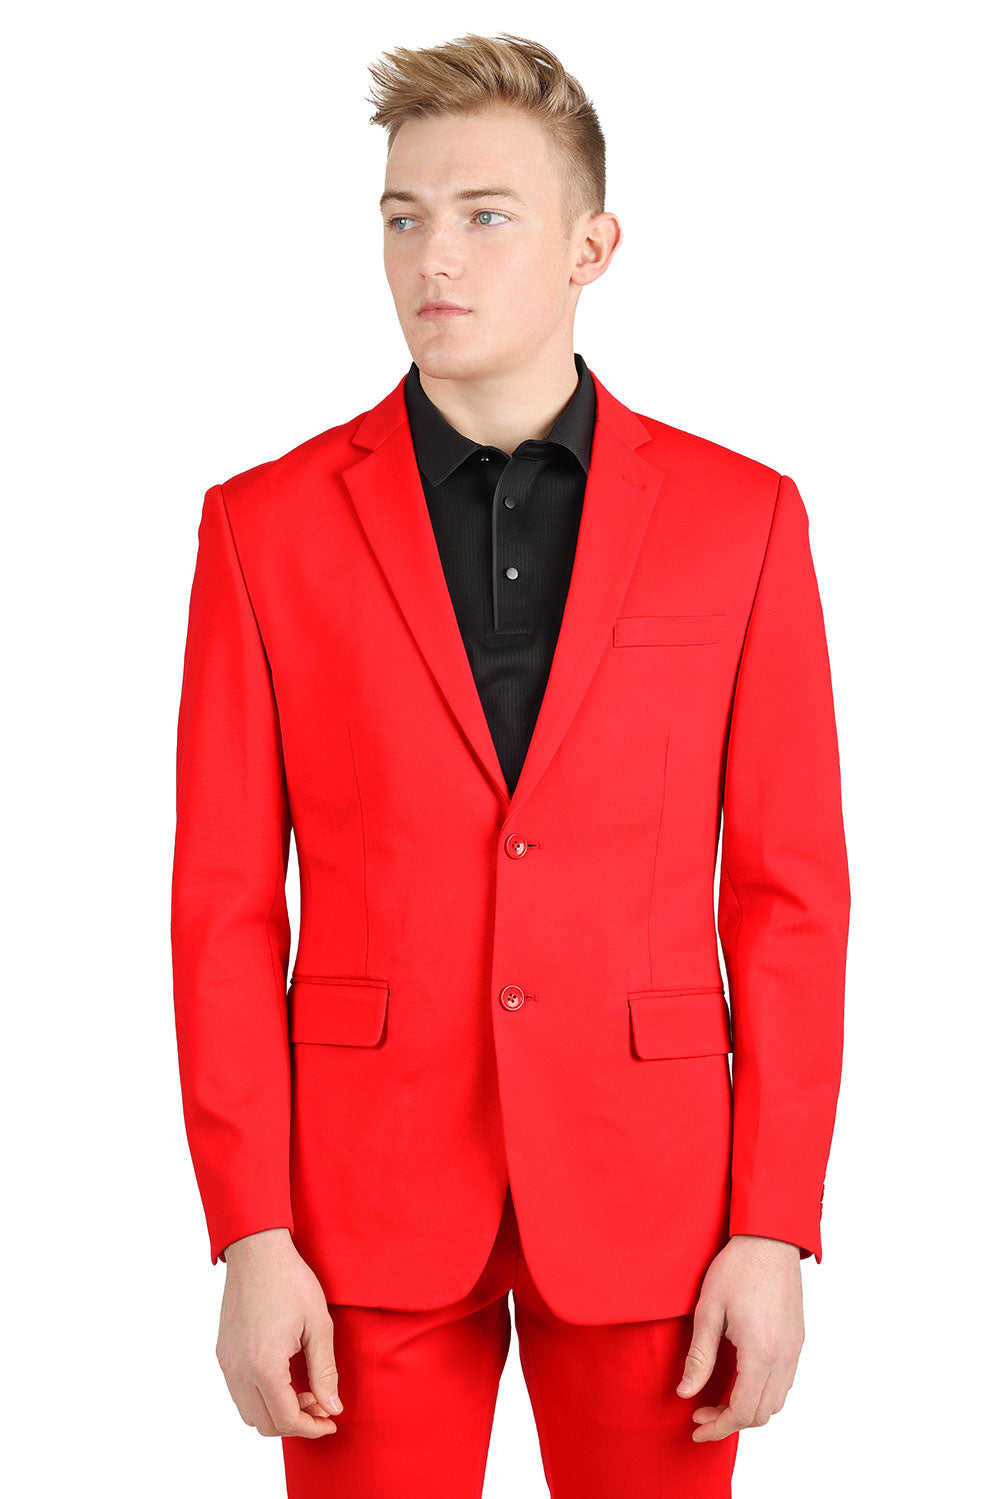 BARABAS Men's Brushed Cotton Notched Lapel Matt Suit 3SU02 Red